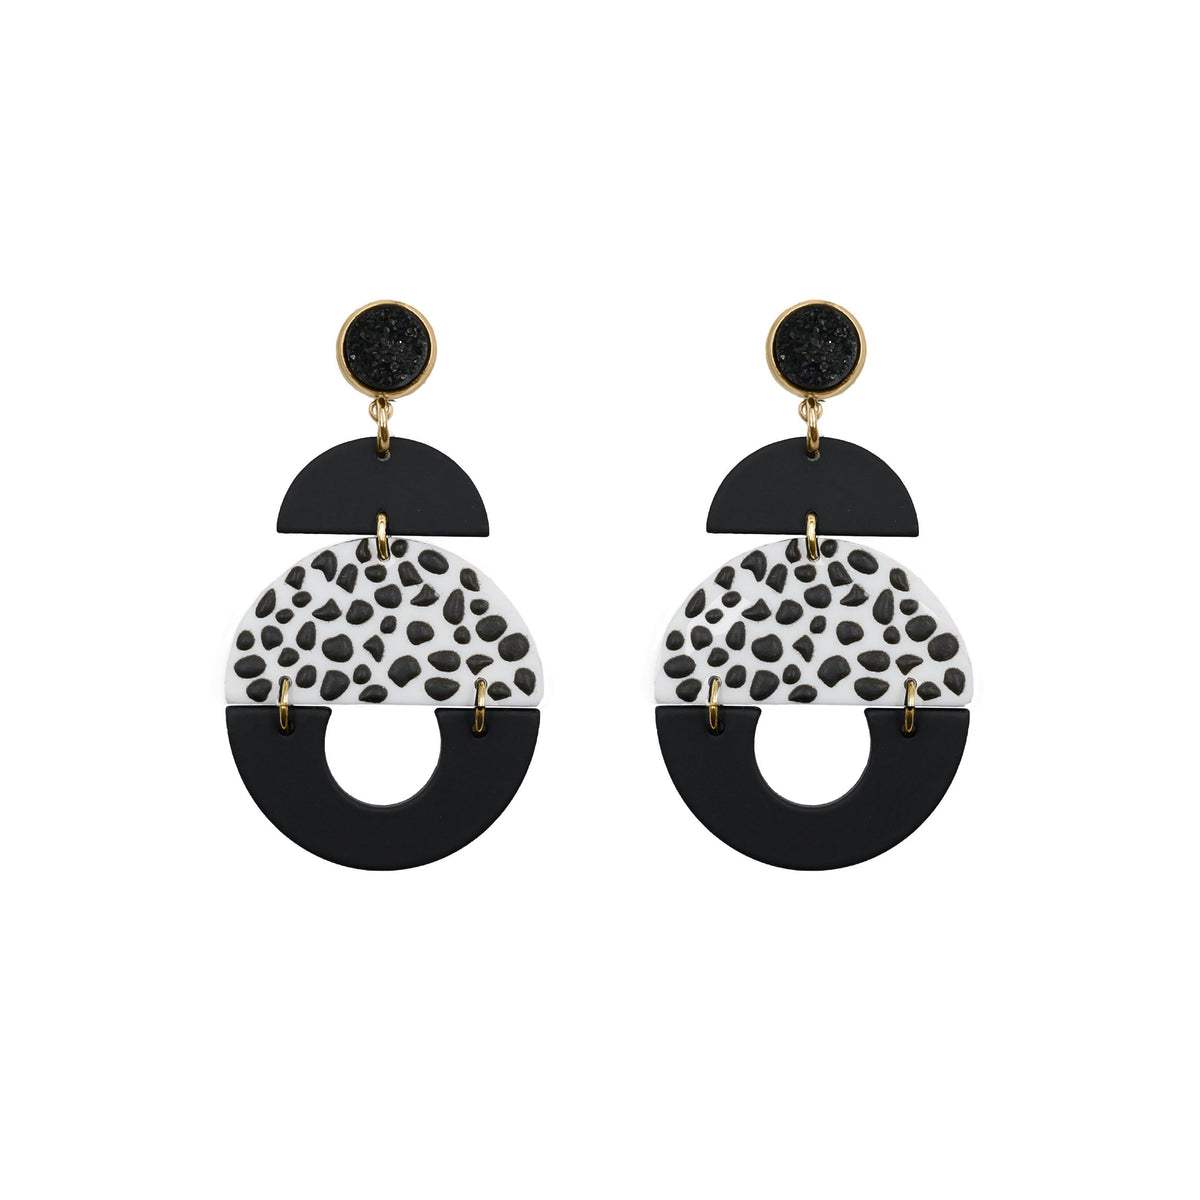 Fiji Collection – Purdy Ohrringe, edler Designerschmuck für Männer und Frauen